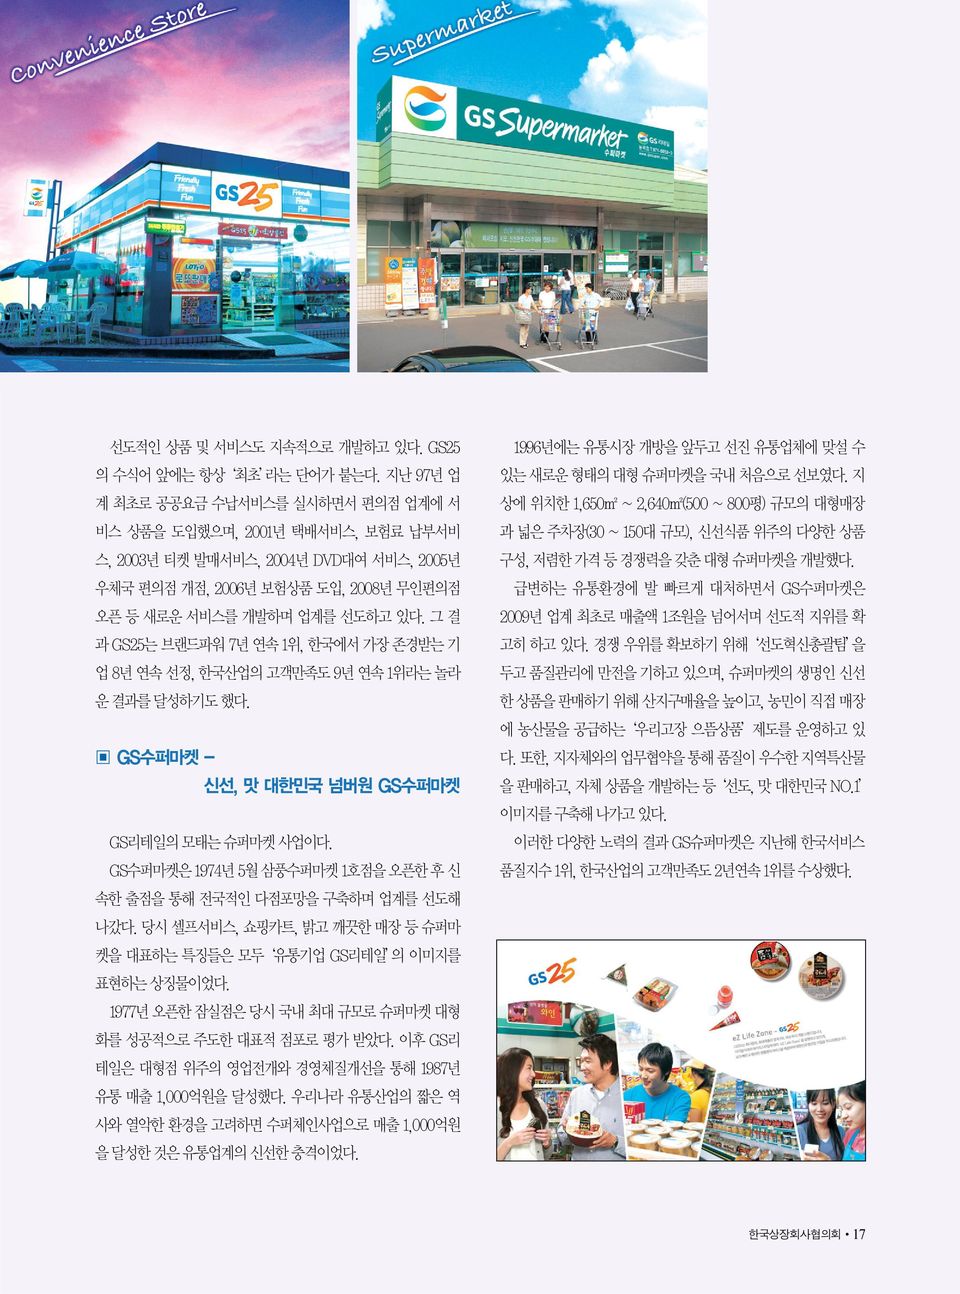 그 결 과 GS25는 브랜드파워 7년 연속 1위, 한국에서 가장 존경받는 기 업 8년 연속 선정, 한국산업의 고객만족도 9년 연속 1위라는 놀라 운 결과를 달성하기도 했다. GS수퍼마켓 - 신선, 맛 대한민국 넘버원 GS수퍼마켓 GS리테일의 모태는 슈퍼마켓 사업이다.